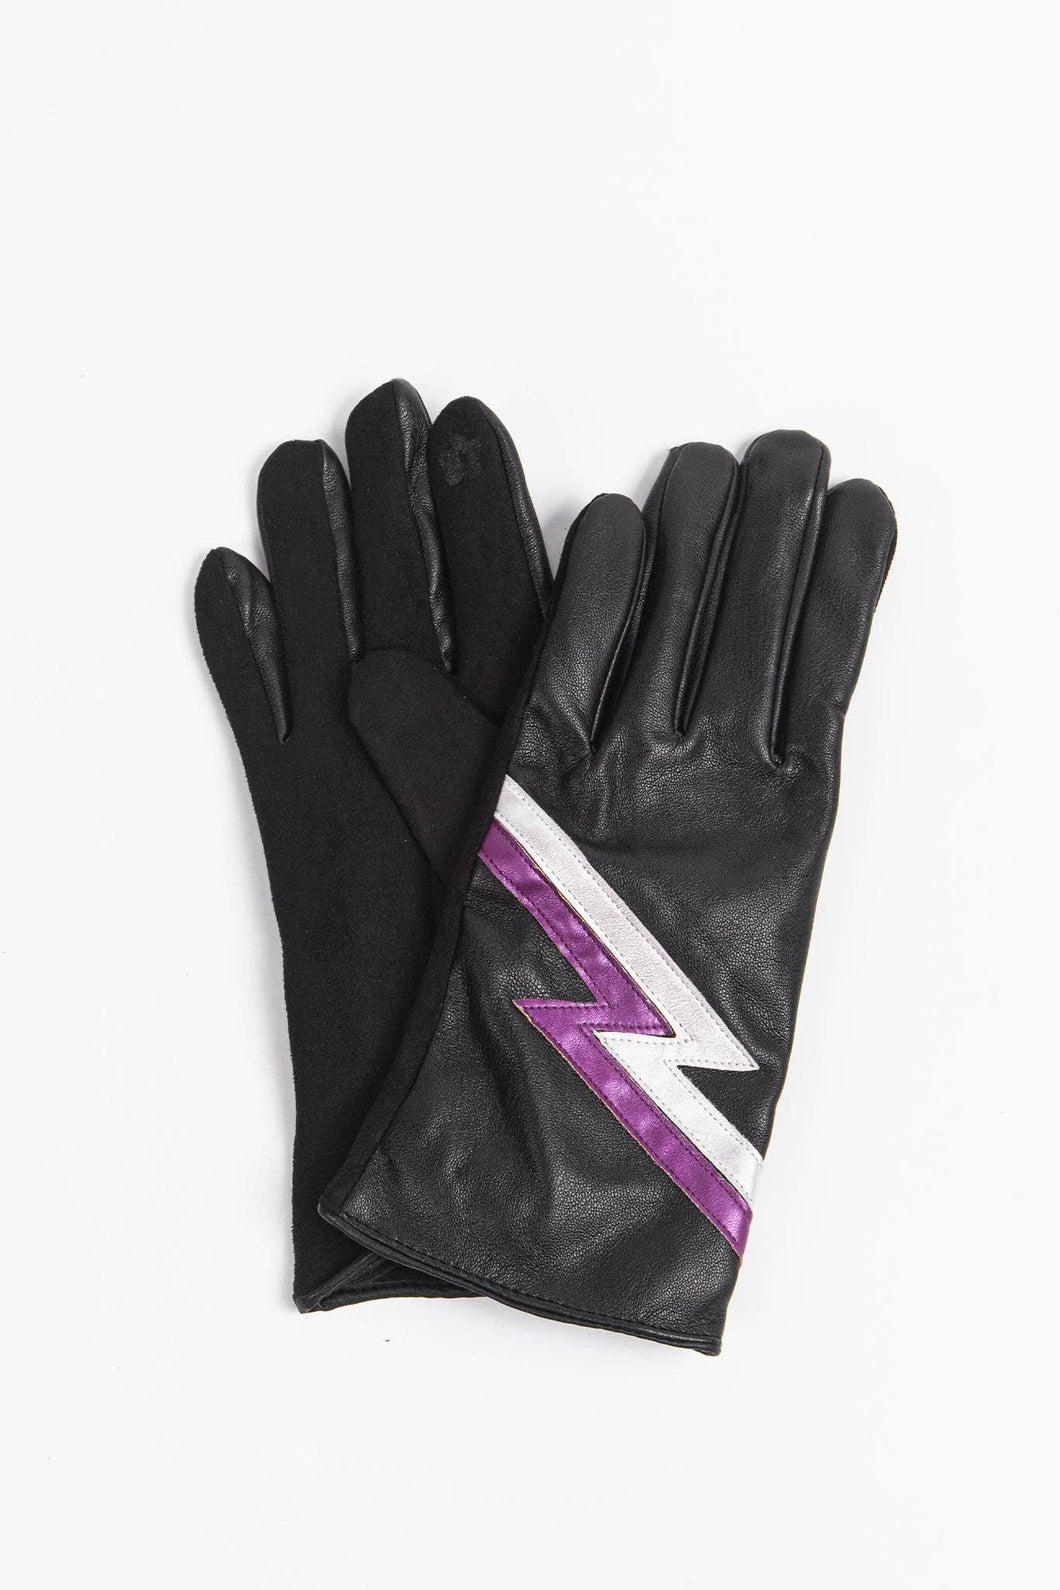 Black & Pink Lightning Bolt Gloves